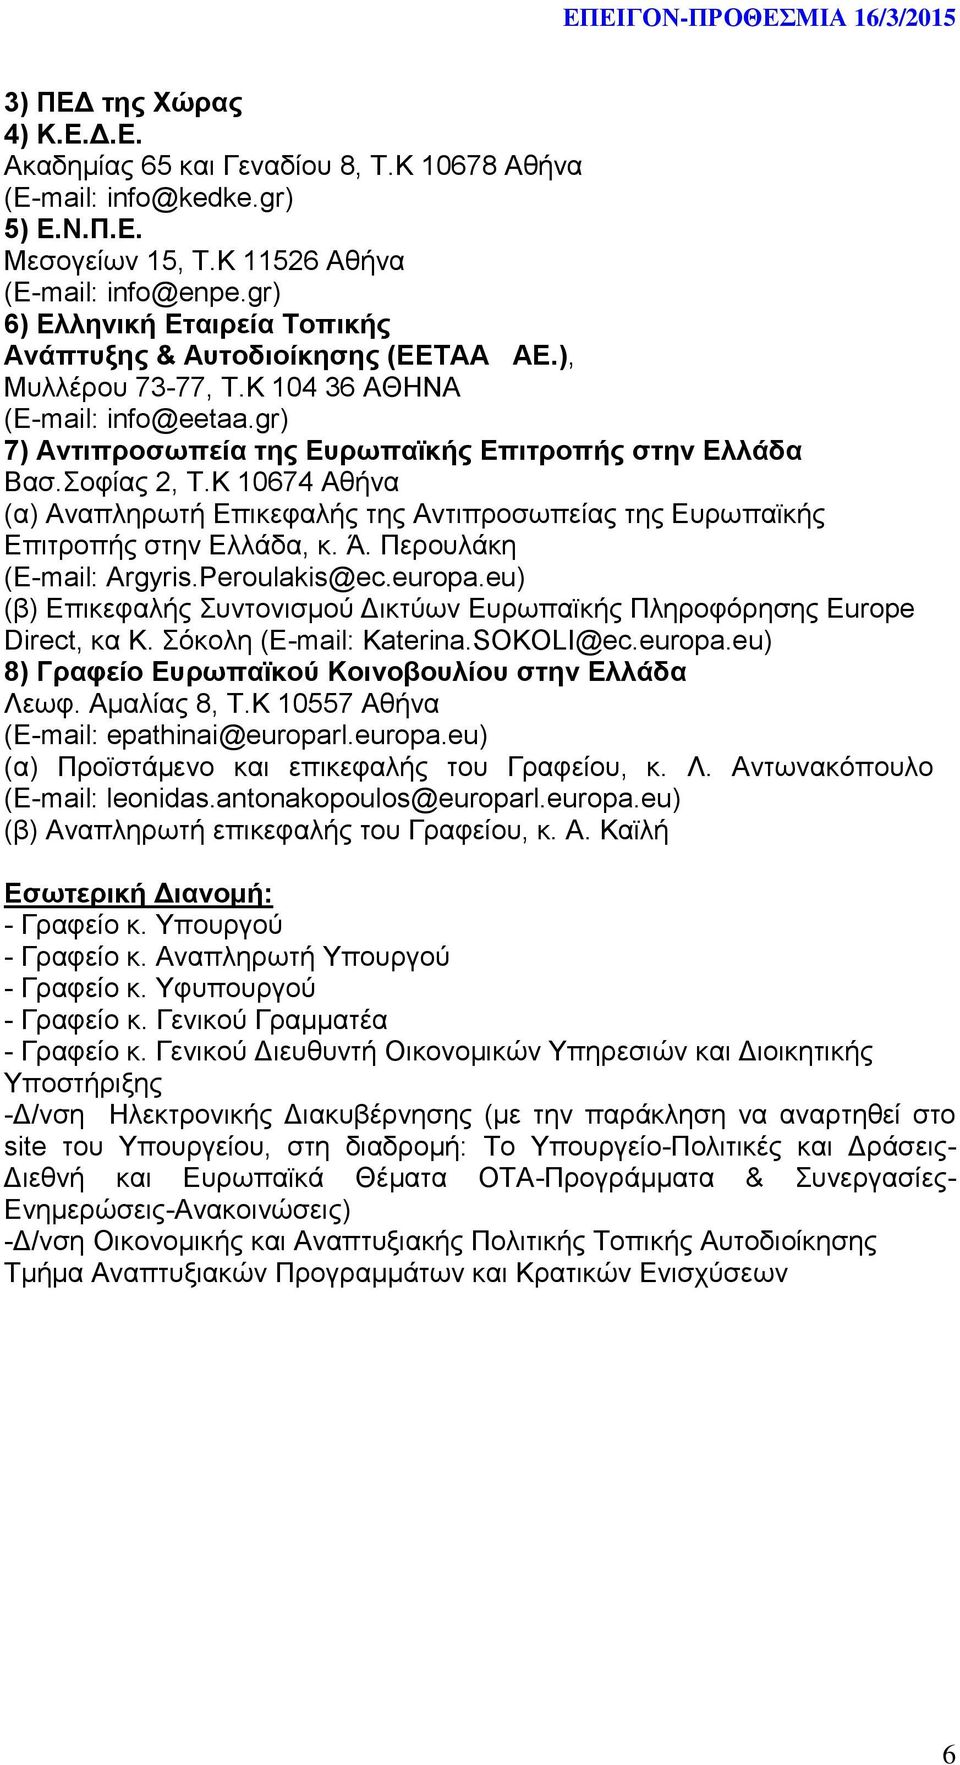 Κ 10674 Αθήνα (α) Αναπληρωτή Επικεφαλής της Αντιπροσωπείας της Ευρωπαϊκής Επιτροπής στην Ελλάδα, κ. Ά. Περουλάκη (E-mail: Argyris.Peroulakis@ec.europa.